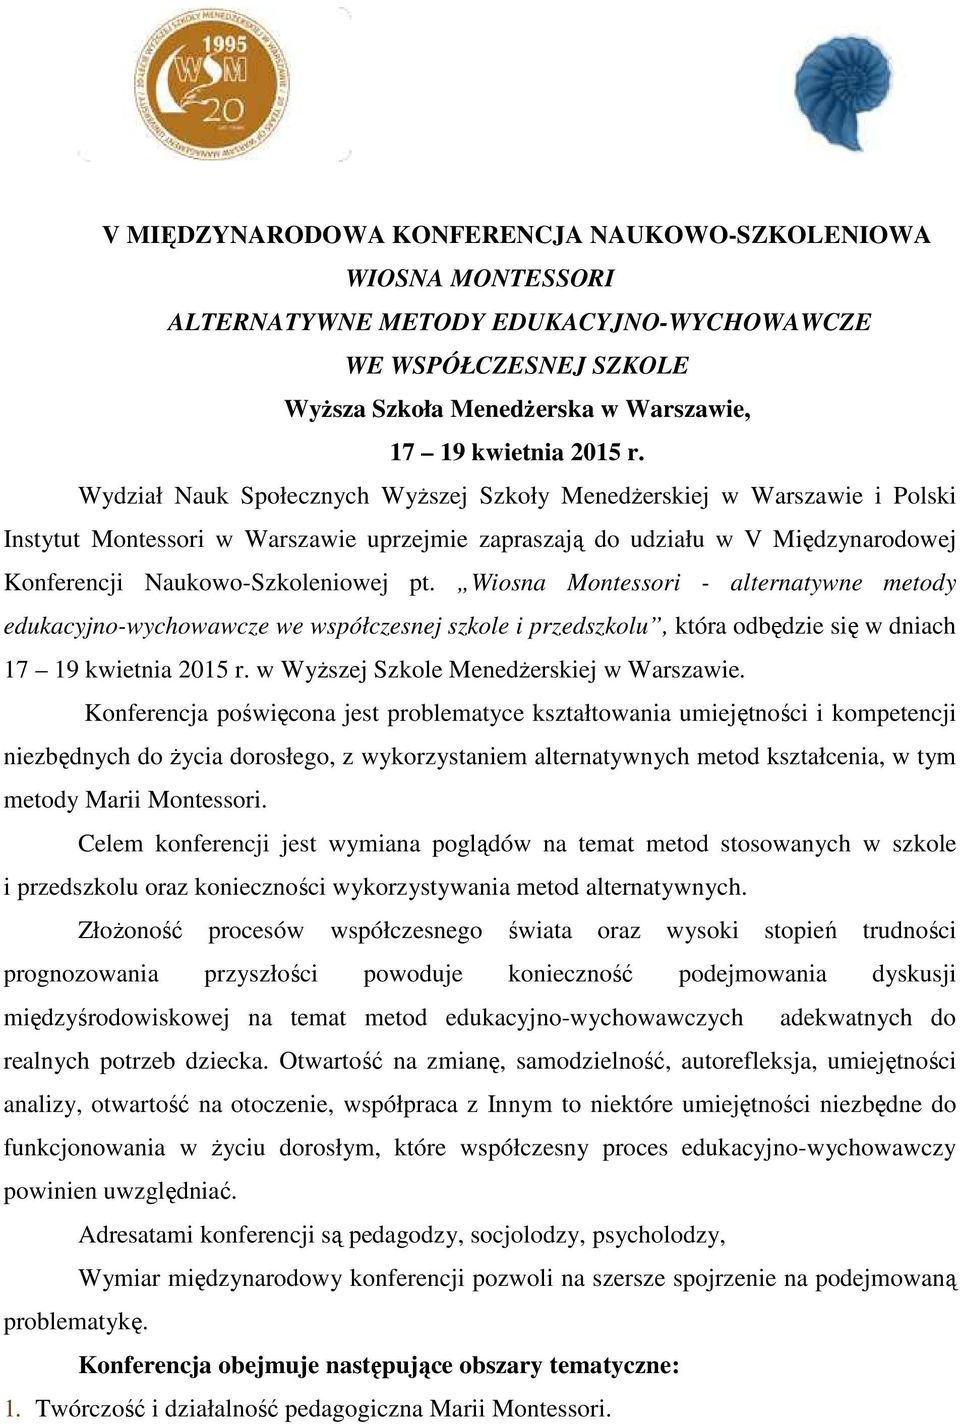 Wiosna Montessori - alternatywne metody edukacyjno-wychowawcze we współczesnej szkole i przedszkolu, która odbędzie się w dniach 17 19 kwietnia 2015 r. w Wyższej Szkole Menedżerskiej w Warszawie.